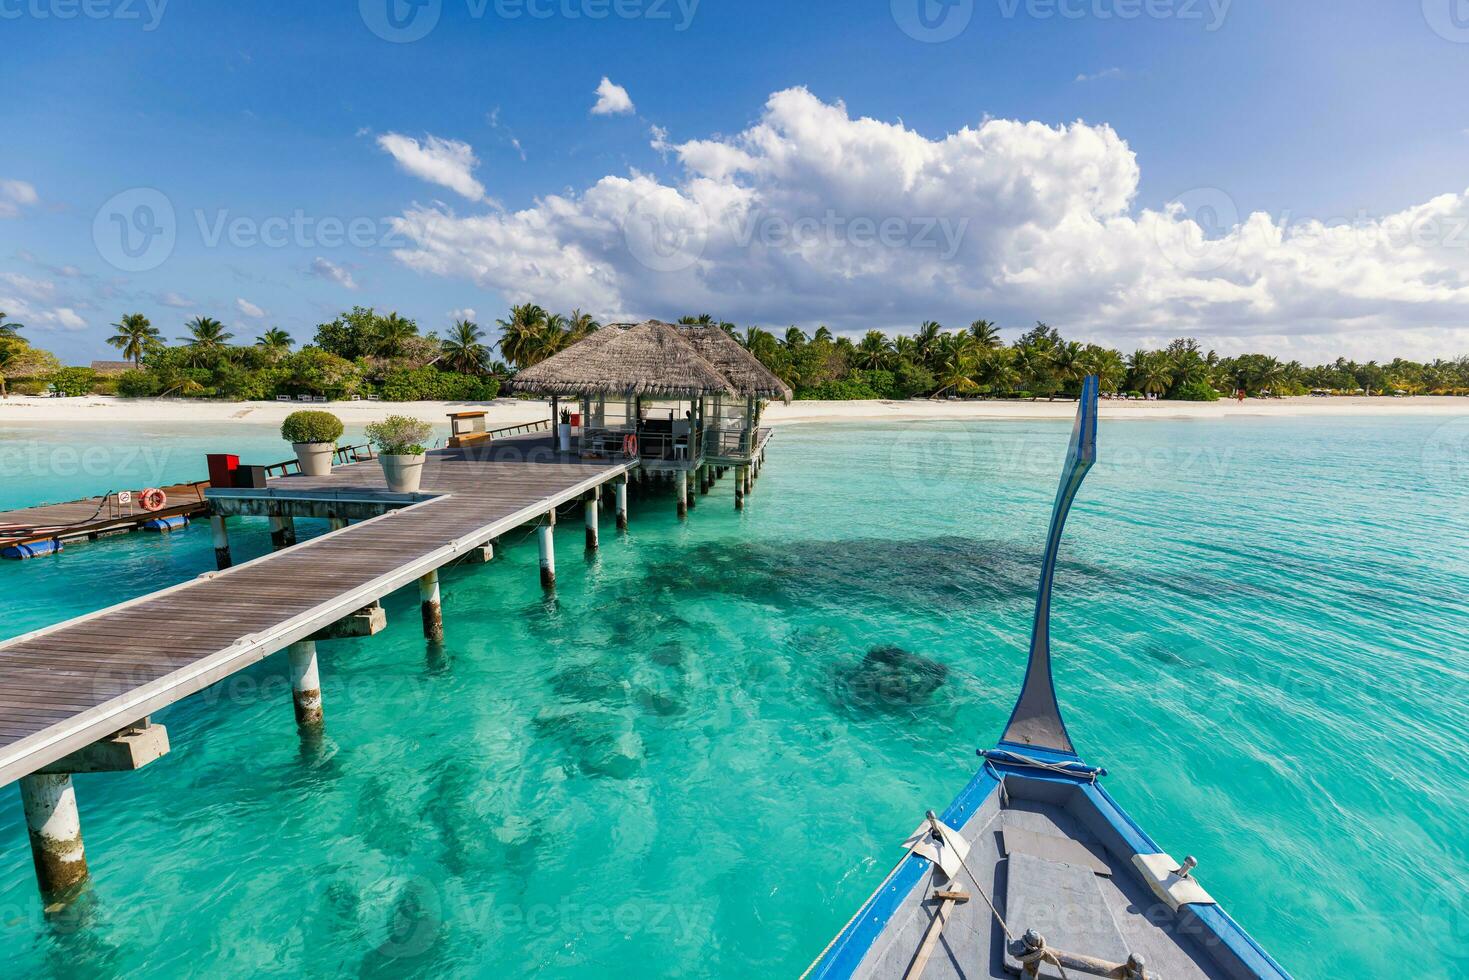 perfecta isla paraíso playa maldivas, viajes. embarcadero largo y un barco dhoni tradicional en el muelle con palmeras, isla de maldivas. hermoso paisaje tropical panorámico con un océano turquesa soleado. foto